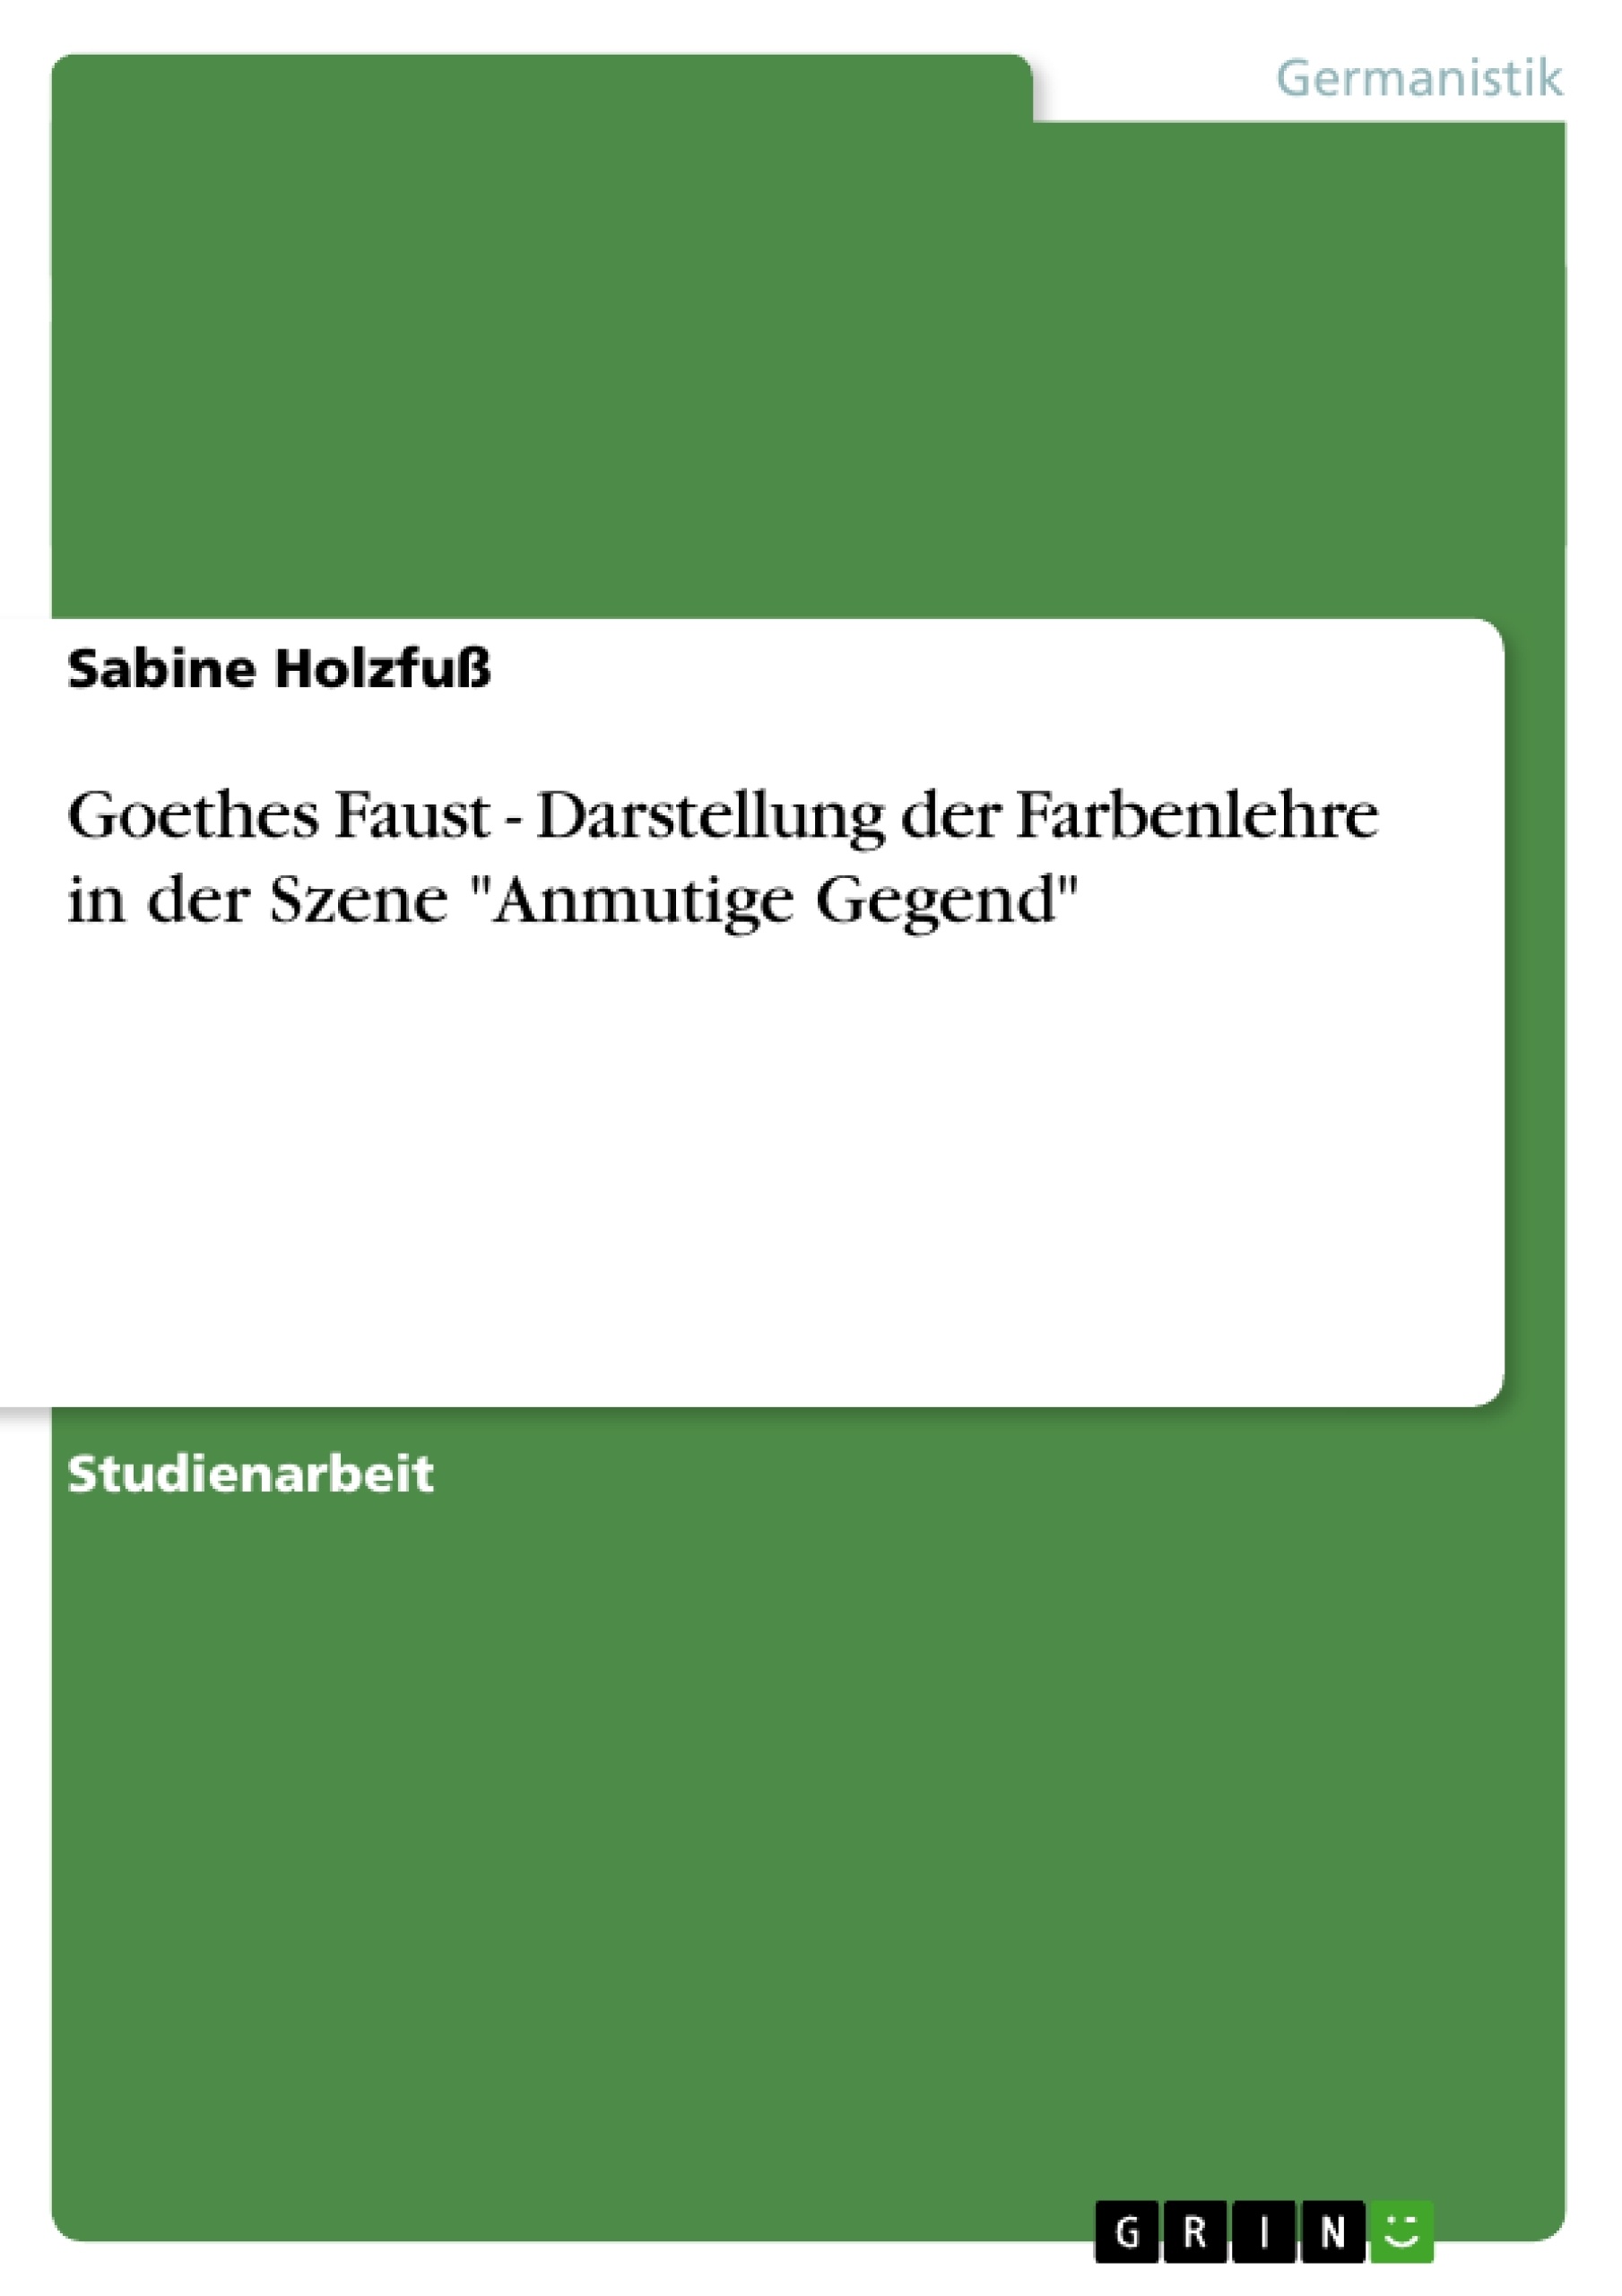 Titre: Goethes Faust - Darstellung der Farbenlehre in der Szene "Anmutige Gegend"